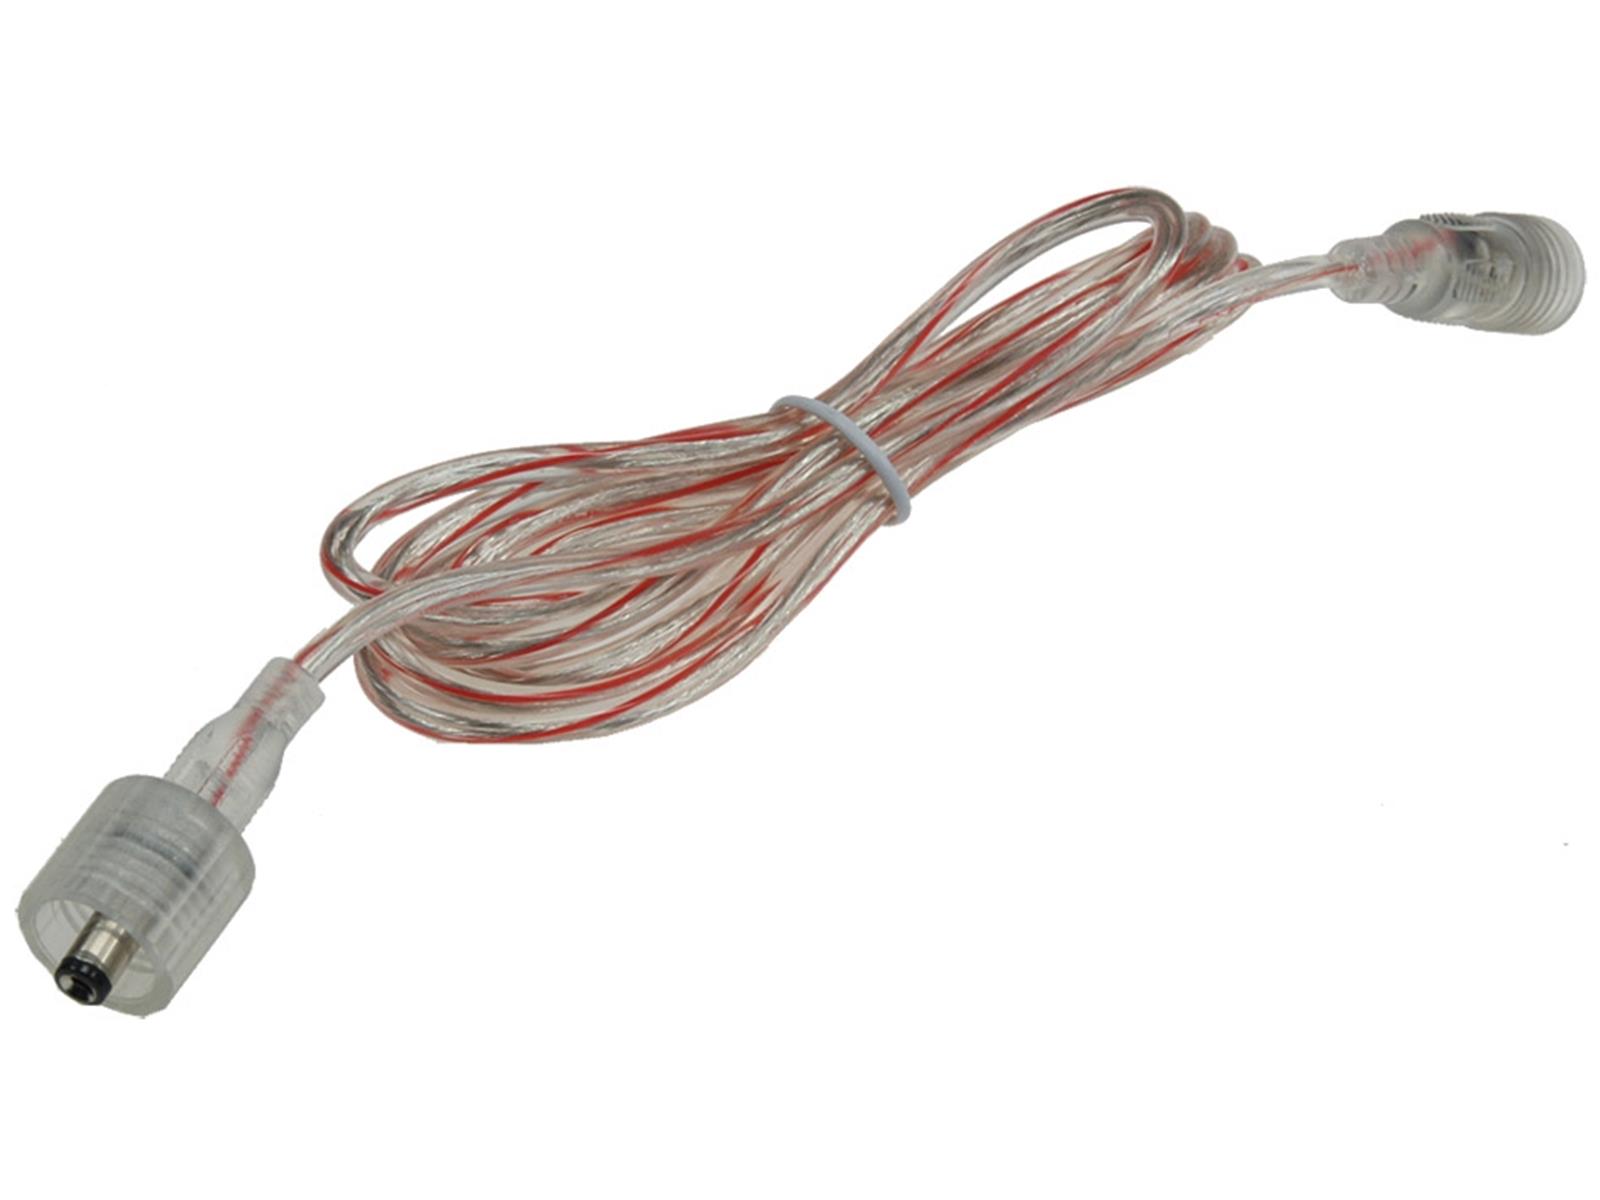 Anschlusskabel für LED-Stripes IP445,5mm Koax, 1,5m, Koax-Stecker/Kupplung